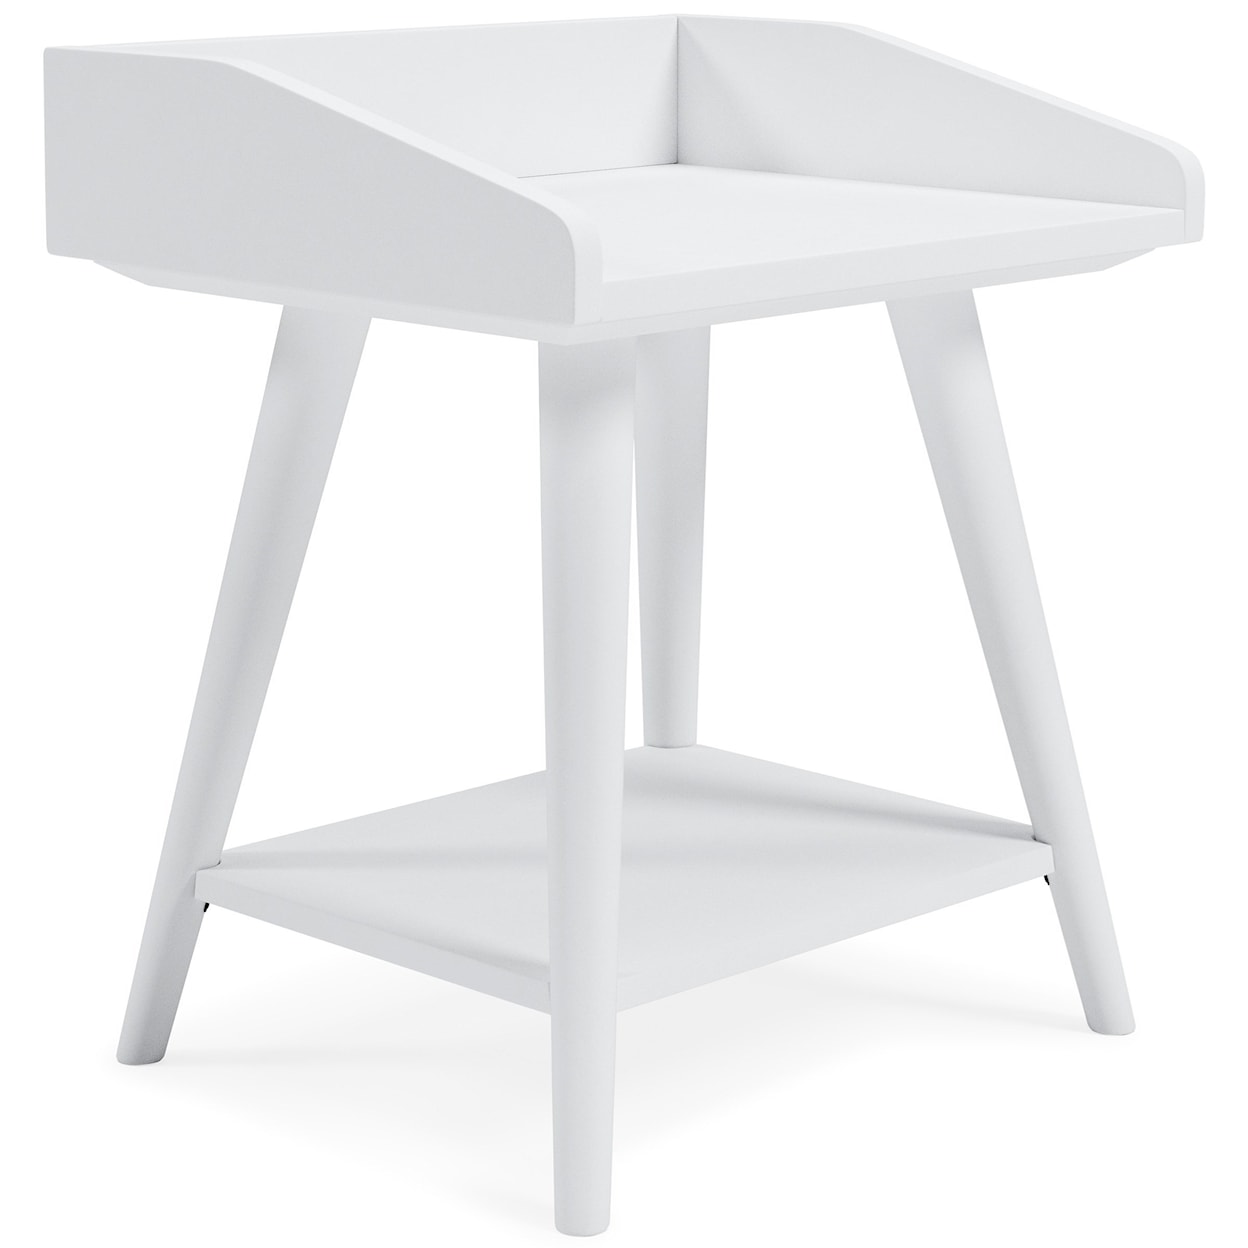 Ashley Furniture Signature Design Blariden Accent Table